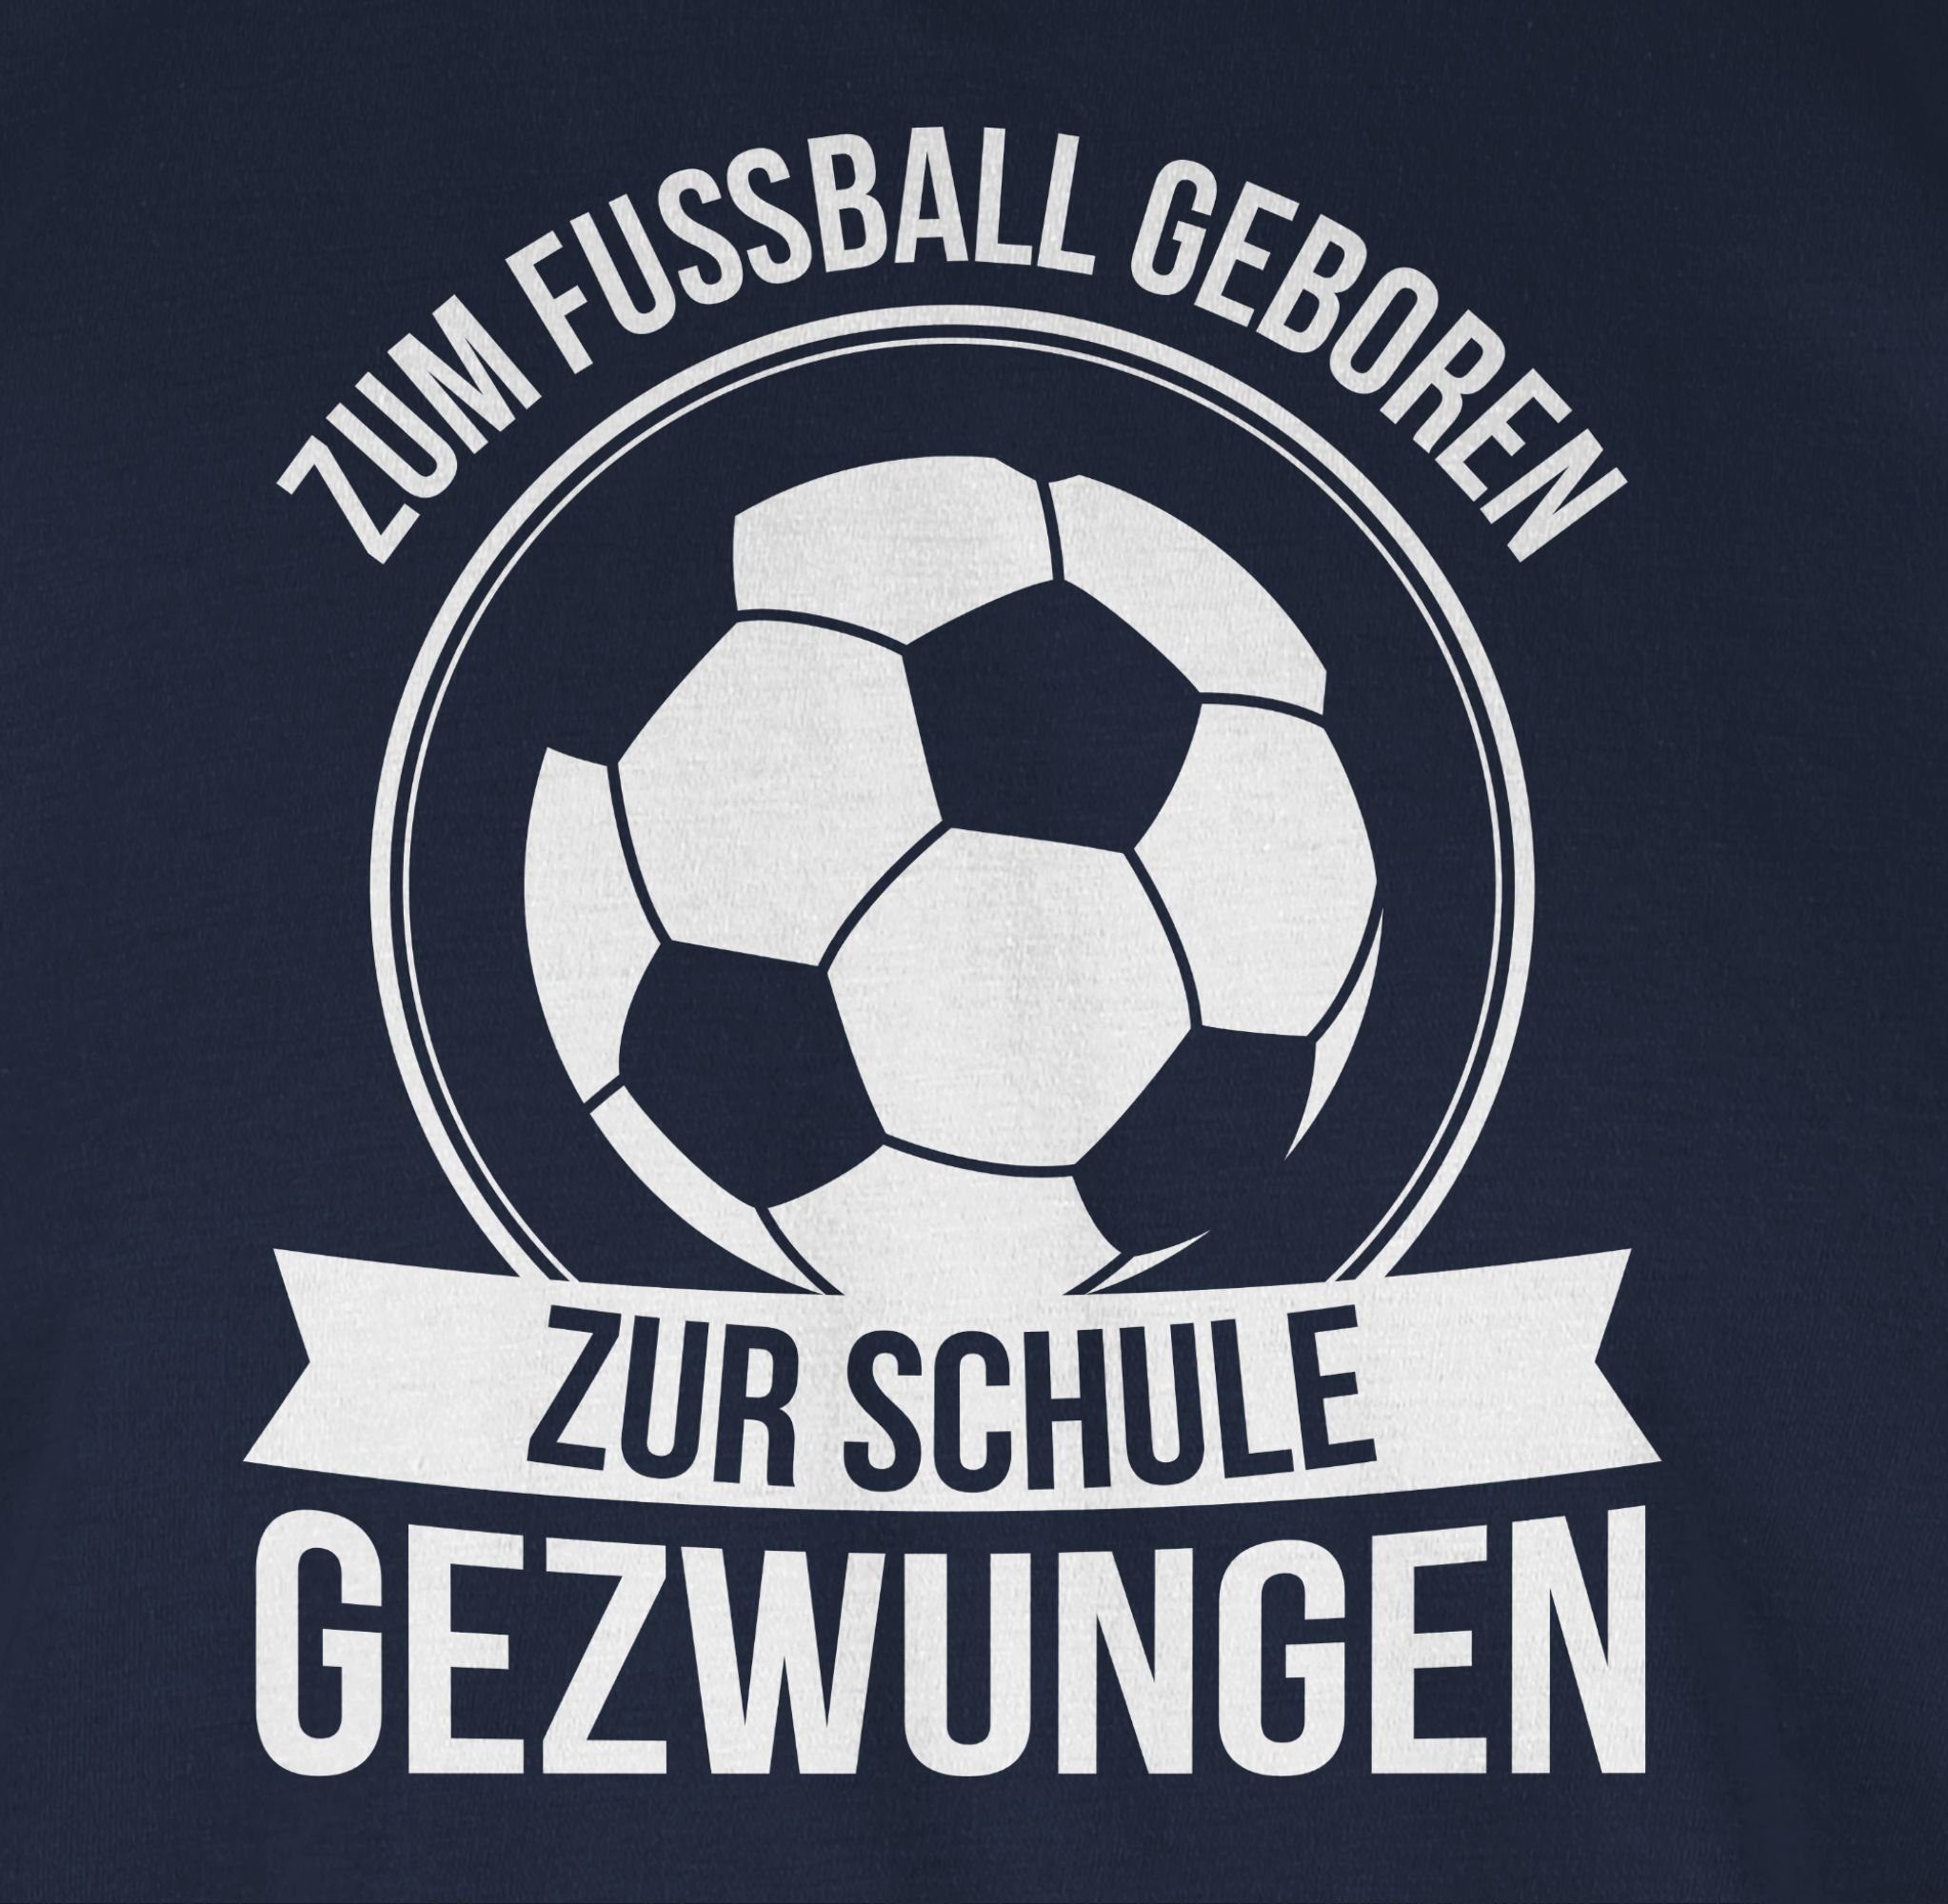 Shirtracer T-Shirt Fussball Zum Blau Schule Navy Fußball zur geboren gezwungen 2 2024 EM